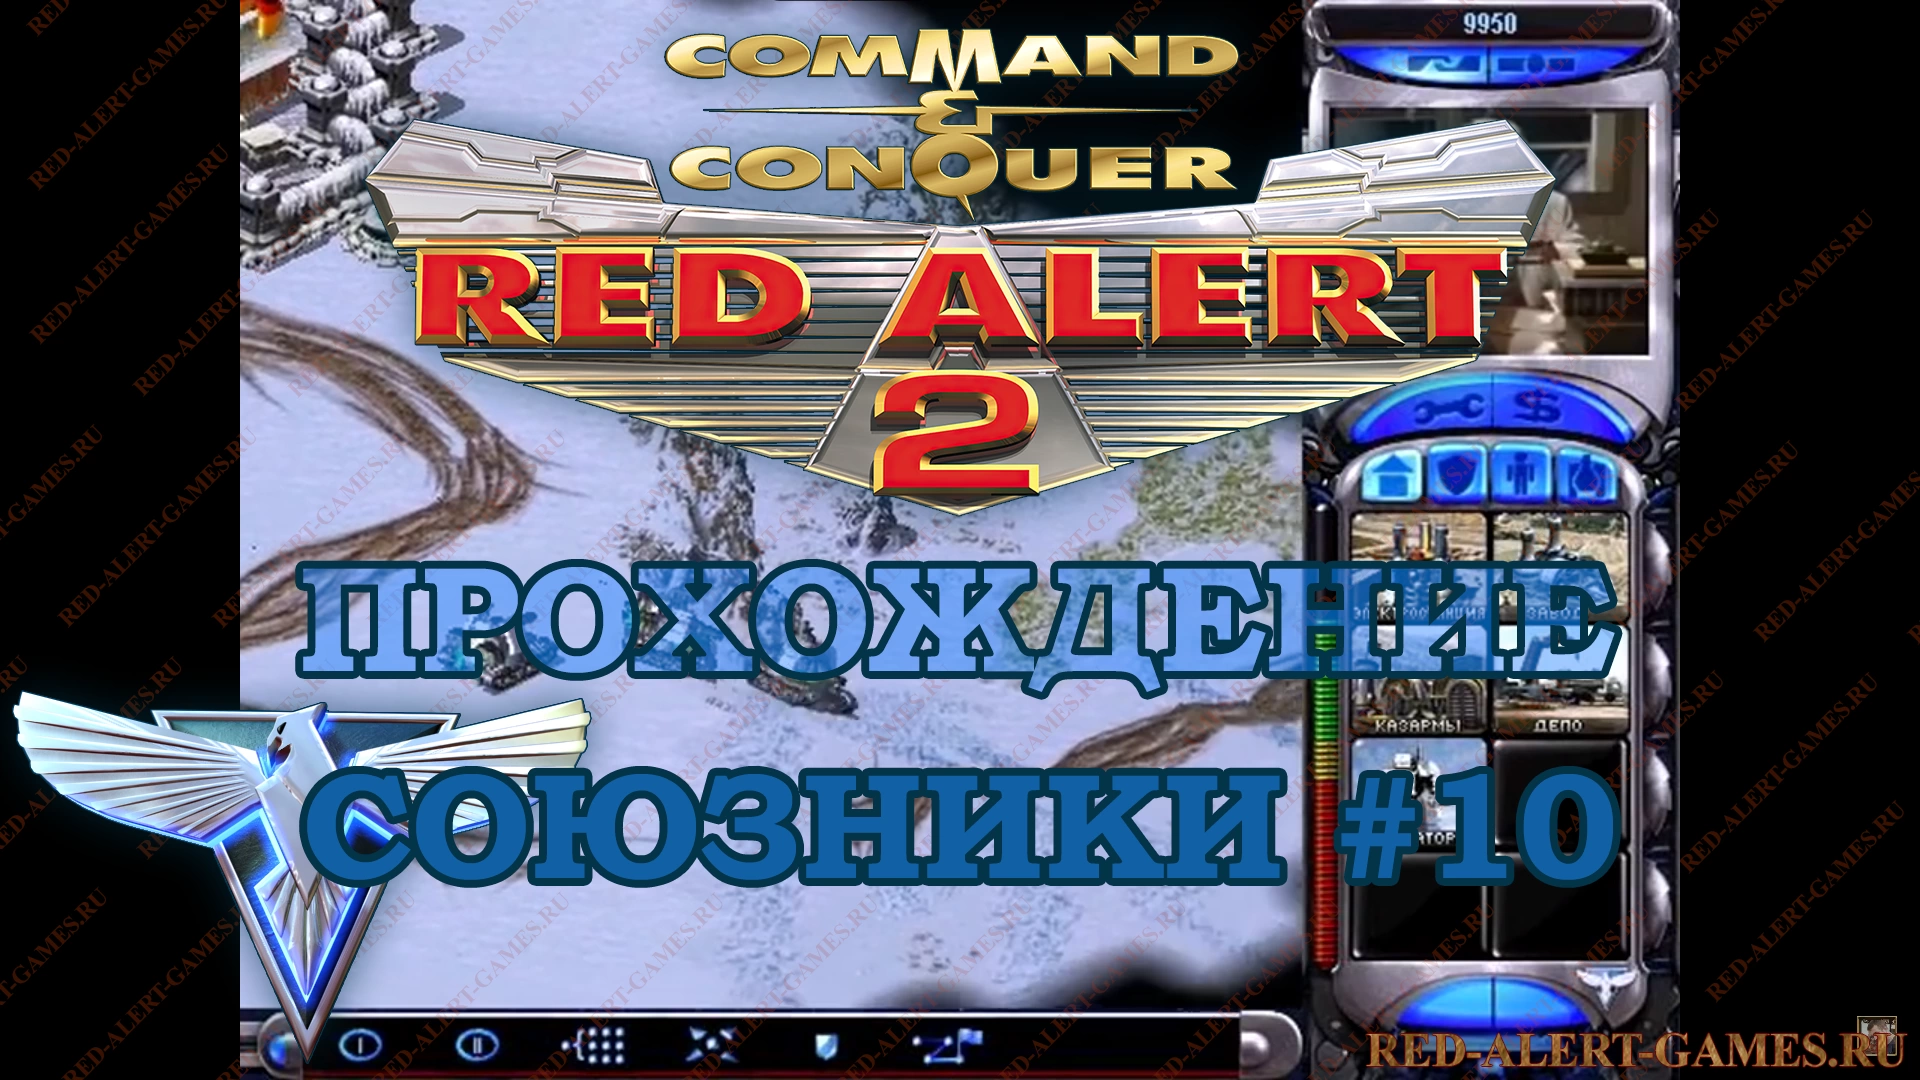 Red Alert 2 Прохождение Союзники - Миссия 10. Мираж (Mirage)